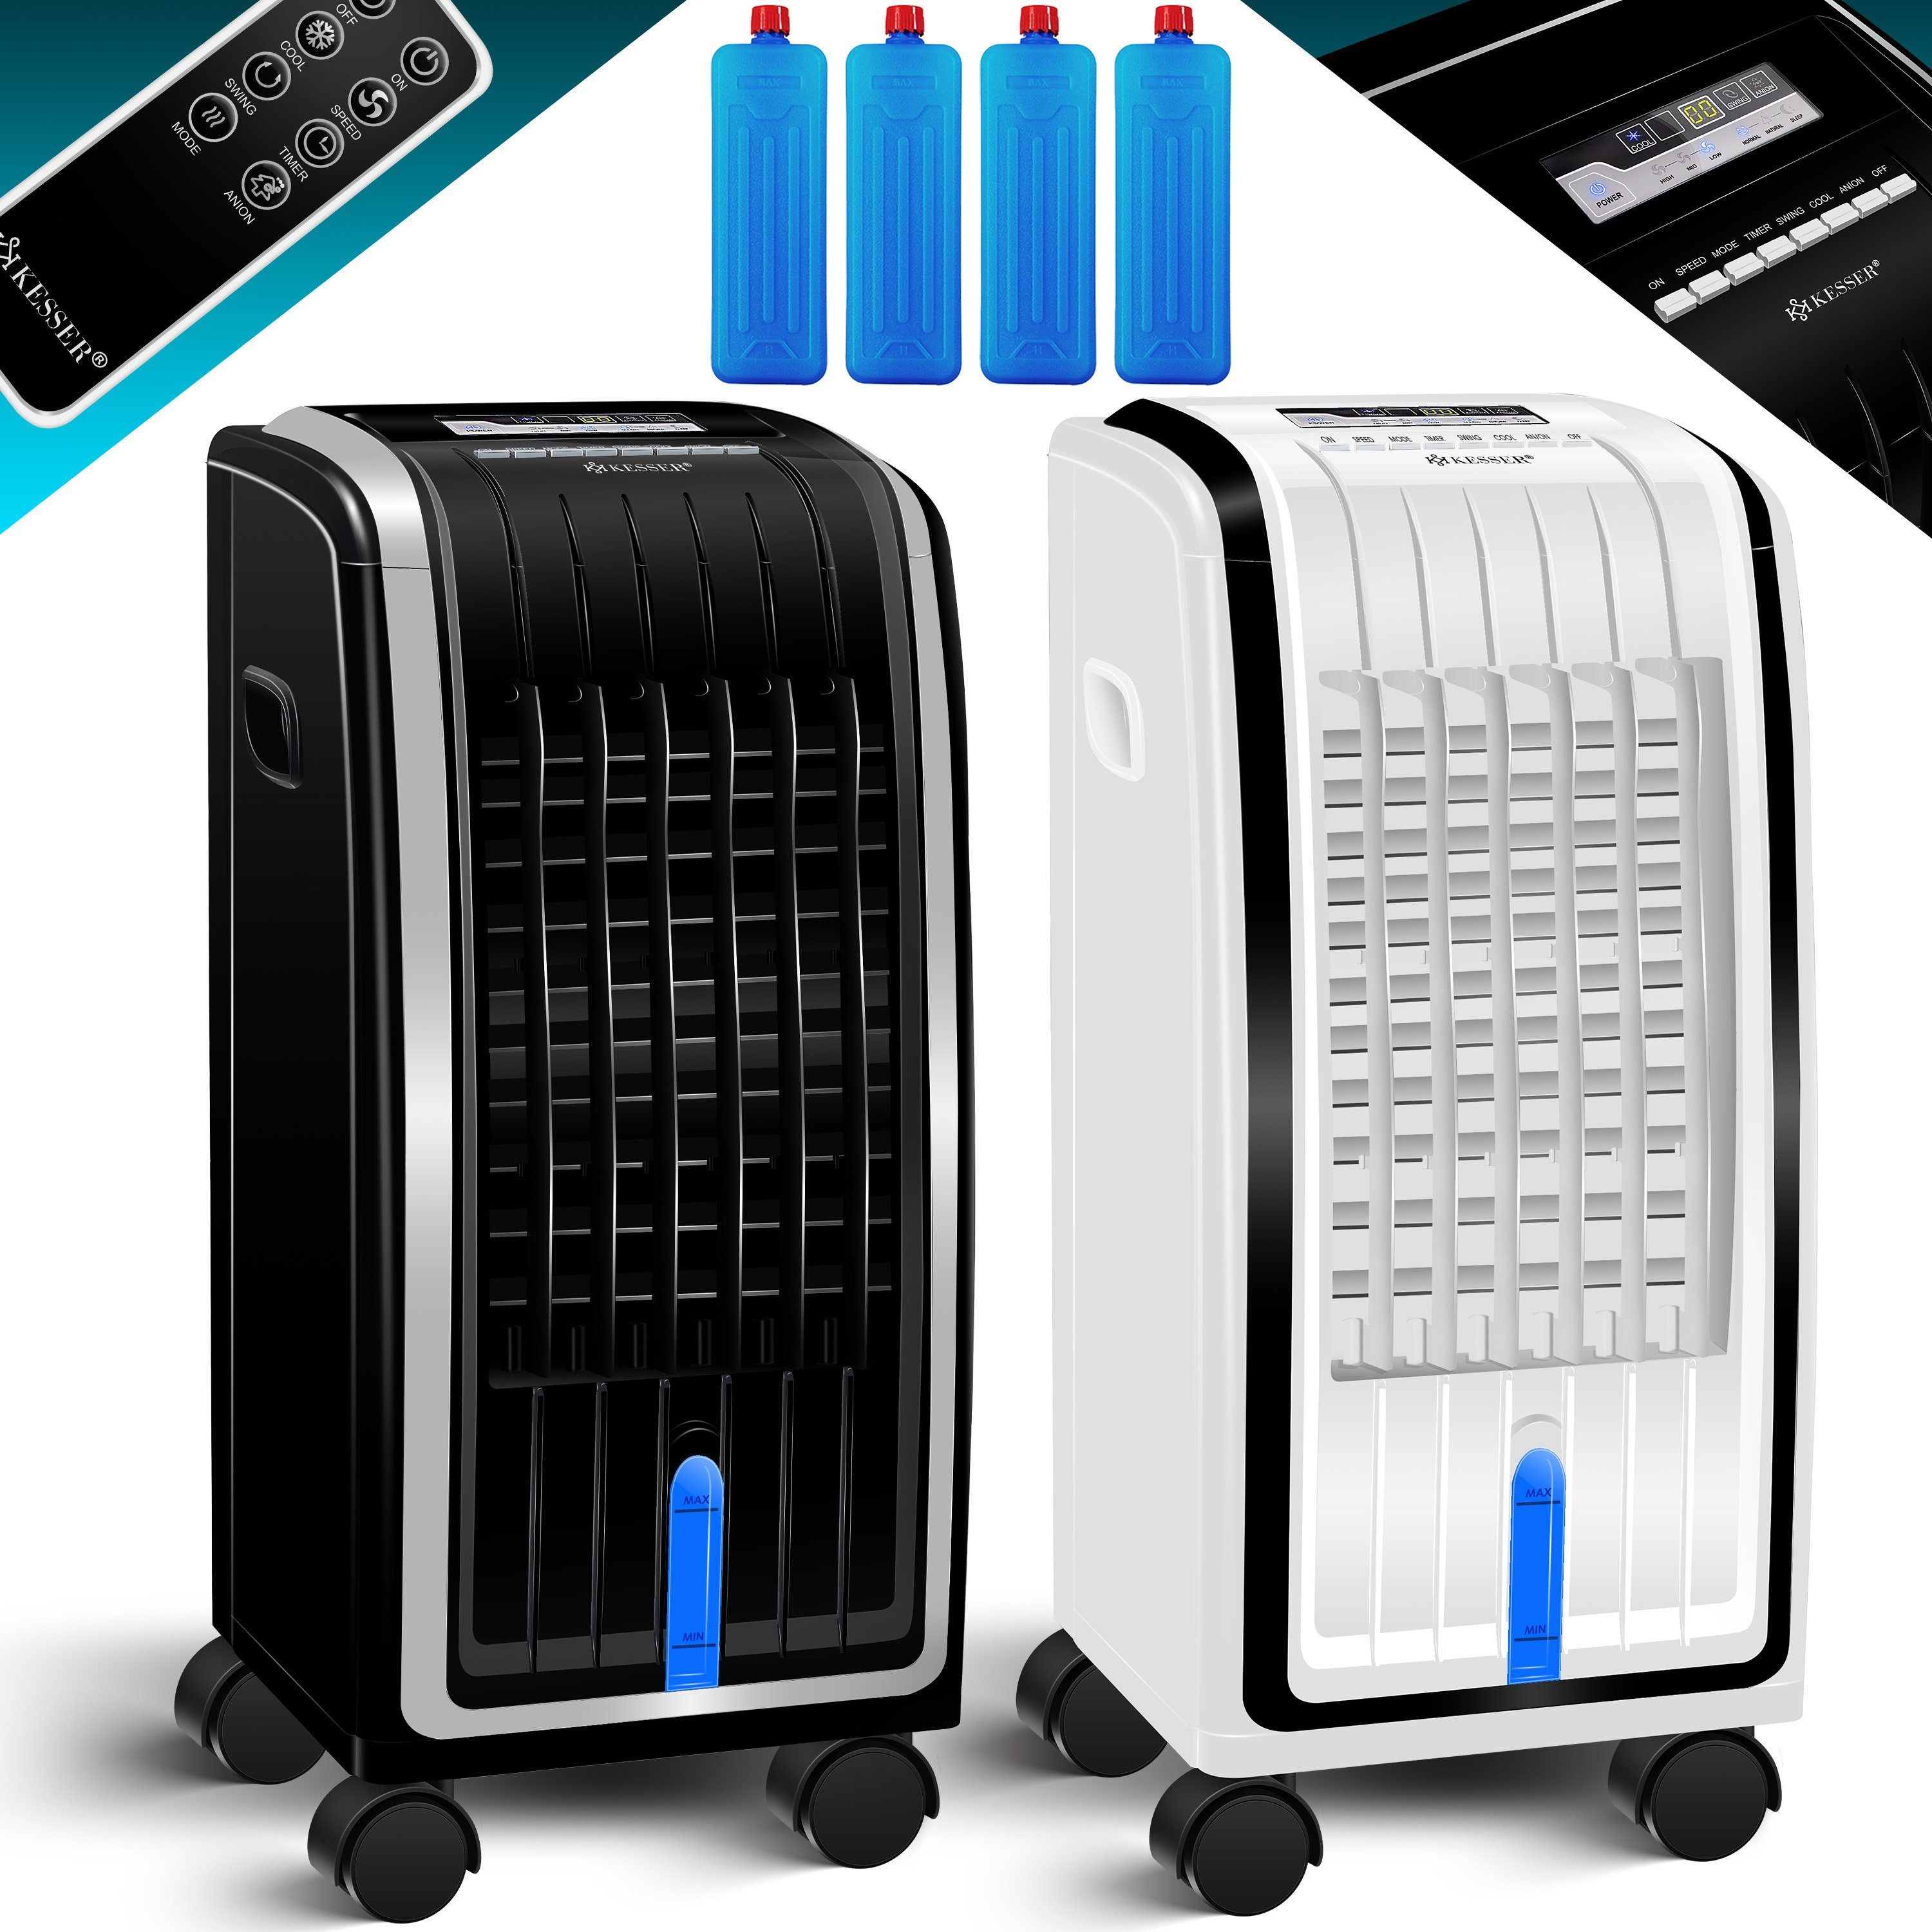 KESSER Turmventilator, weiß / Fernbedienung schwarz Klimaanlage Mobile 4in1 Klimagerät Ventilator